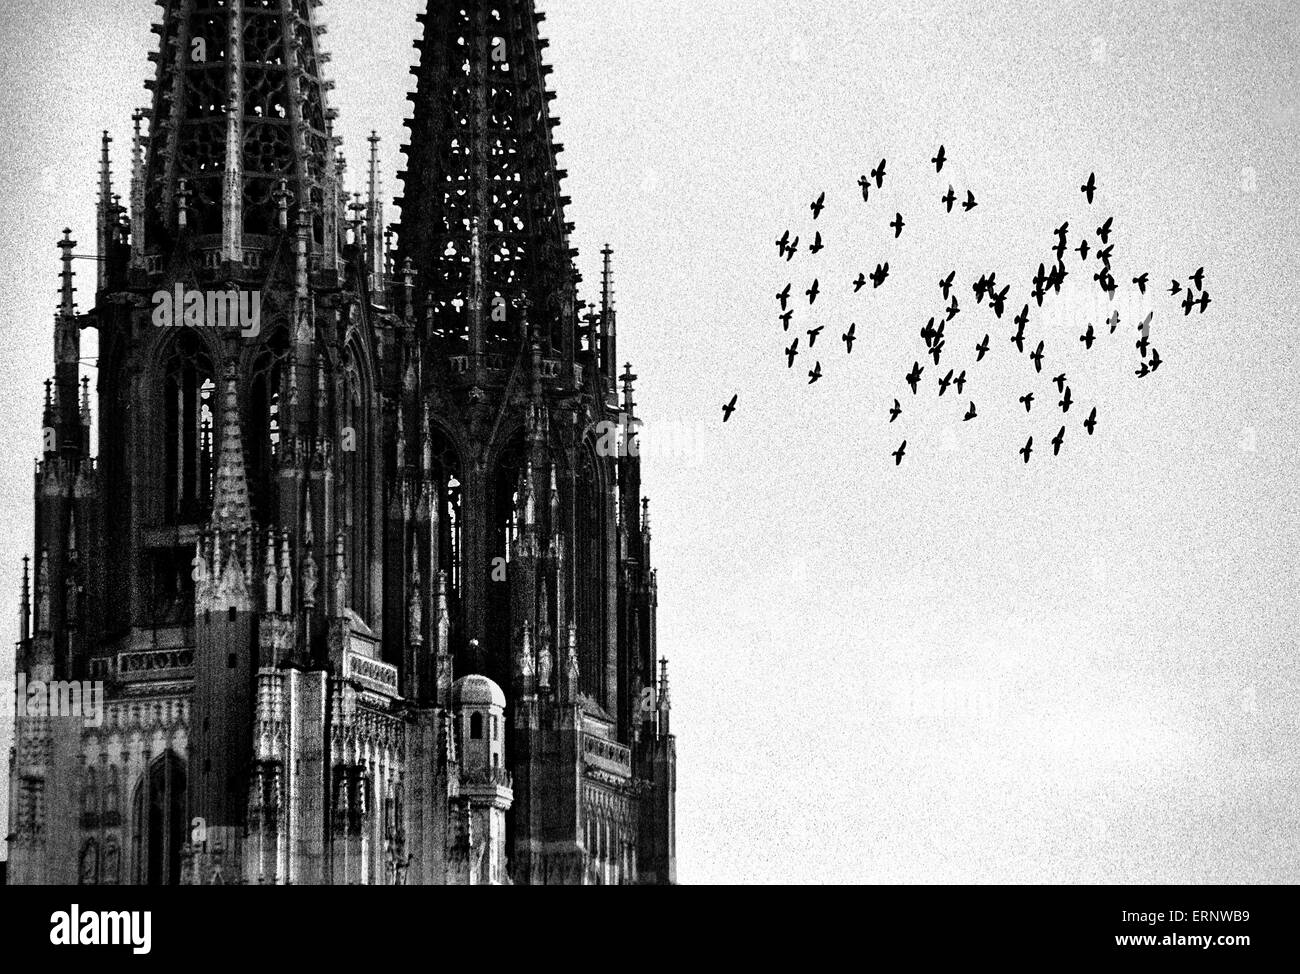 Uno sciame di piccioni in grigio cielo invernale è volare da Regensburg San Pietro cattedrale gotica simbolo della città medievale di Ratisbona (Baviera, Germania), il sito patrimonio mondiale dell'UNESCO. Foto Stock